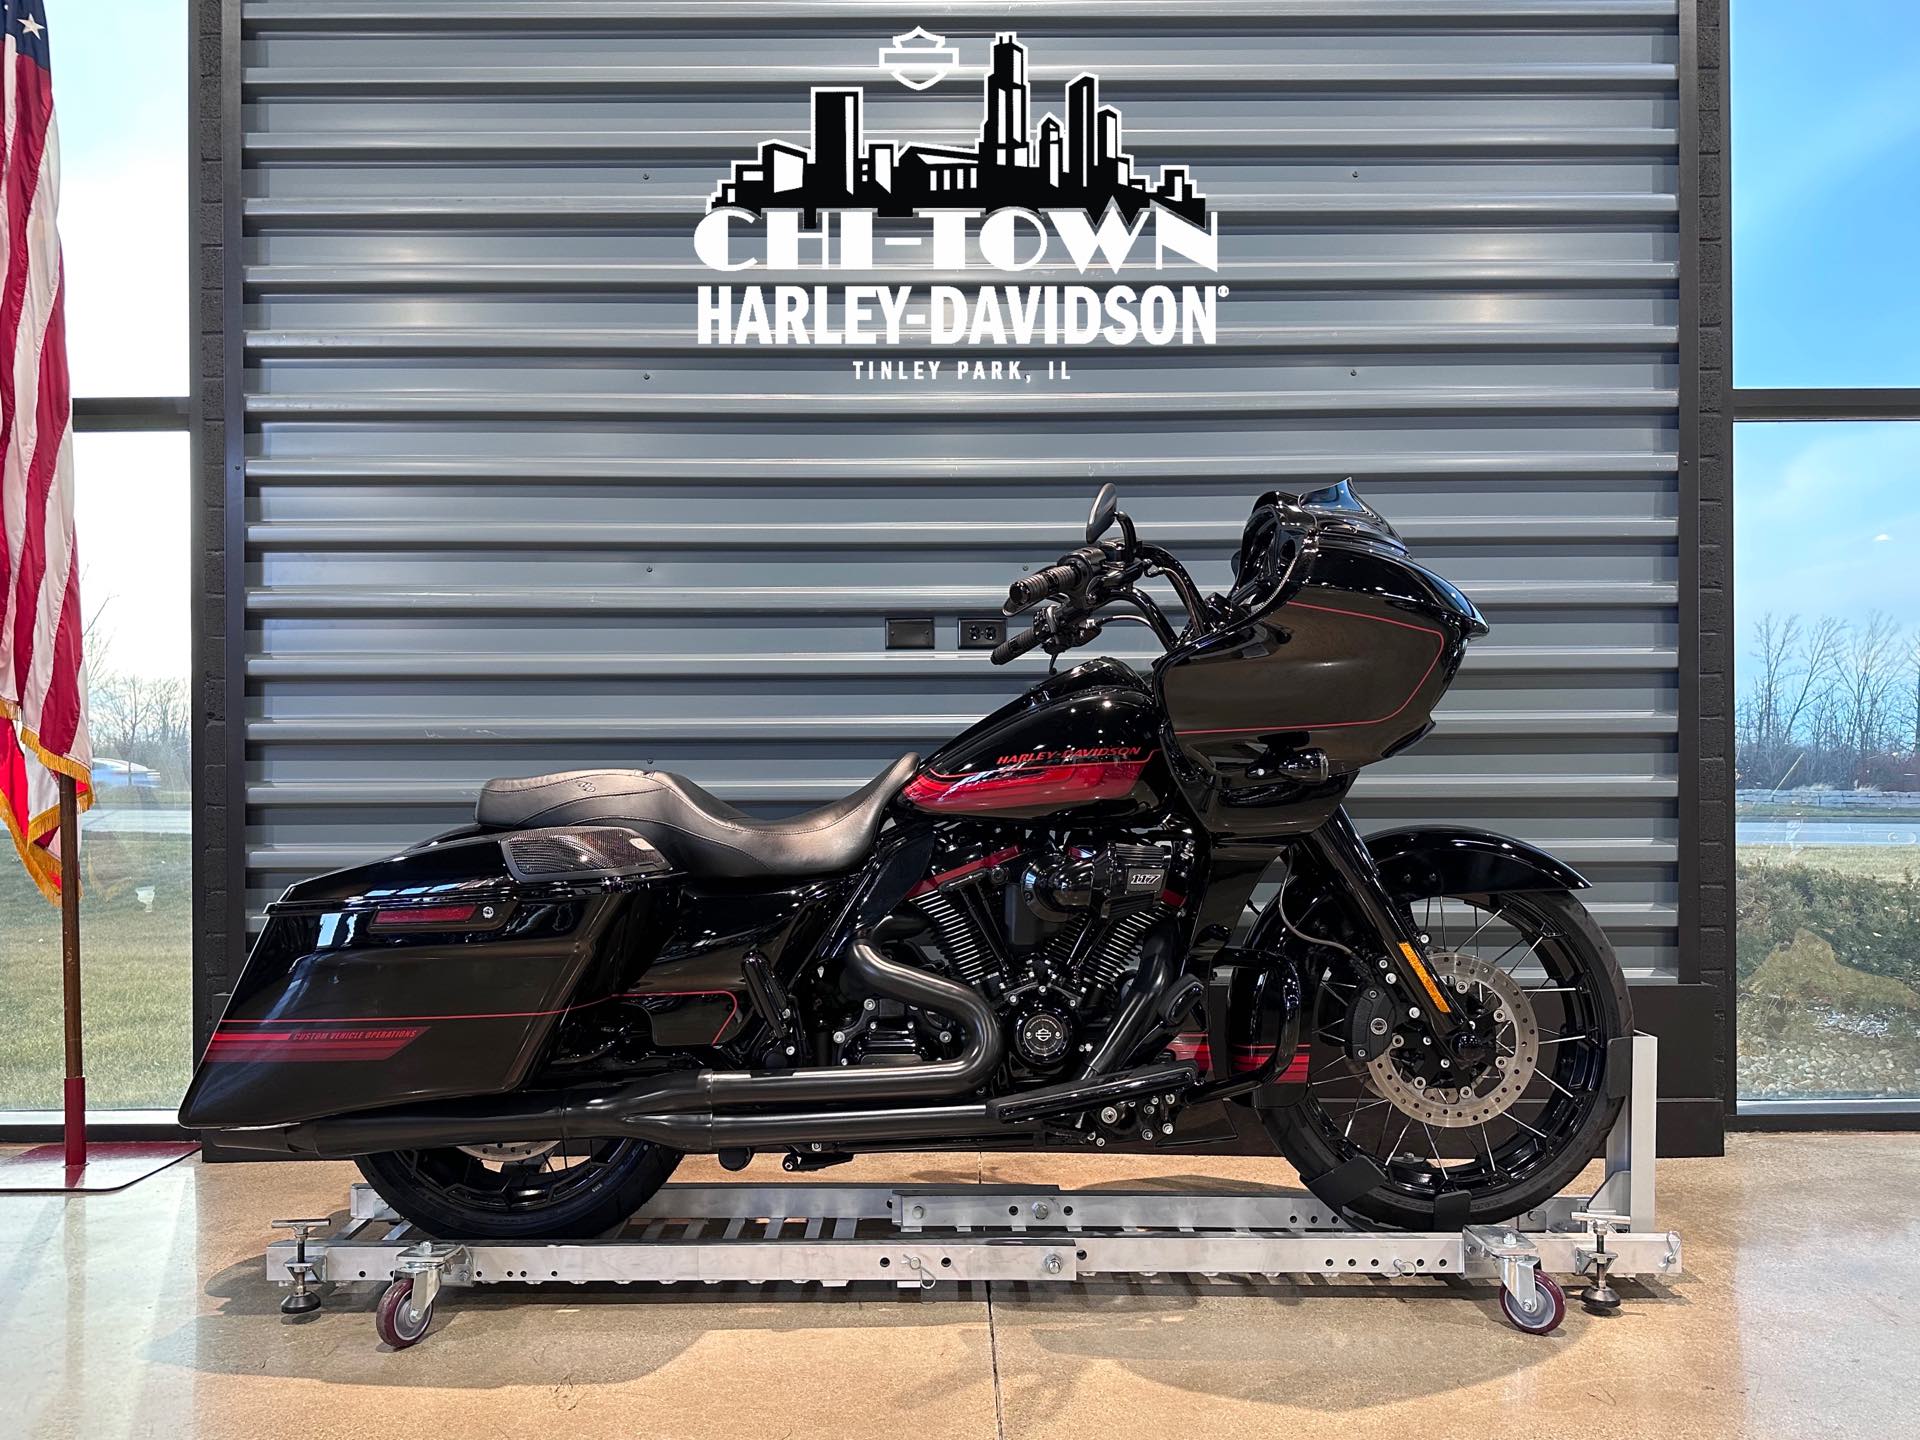 2021 Harley-Davidson CVO' Road Glide CVO Road Glide at Chi-Town Harley-Davidson